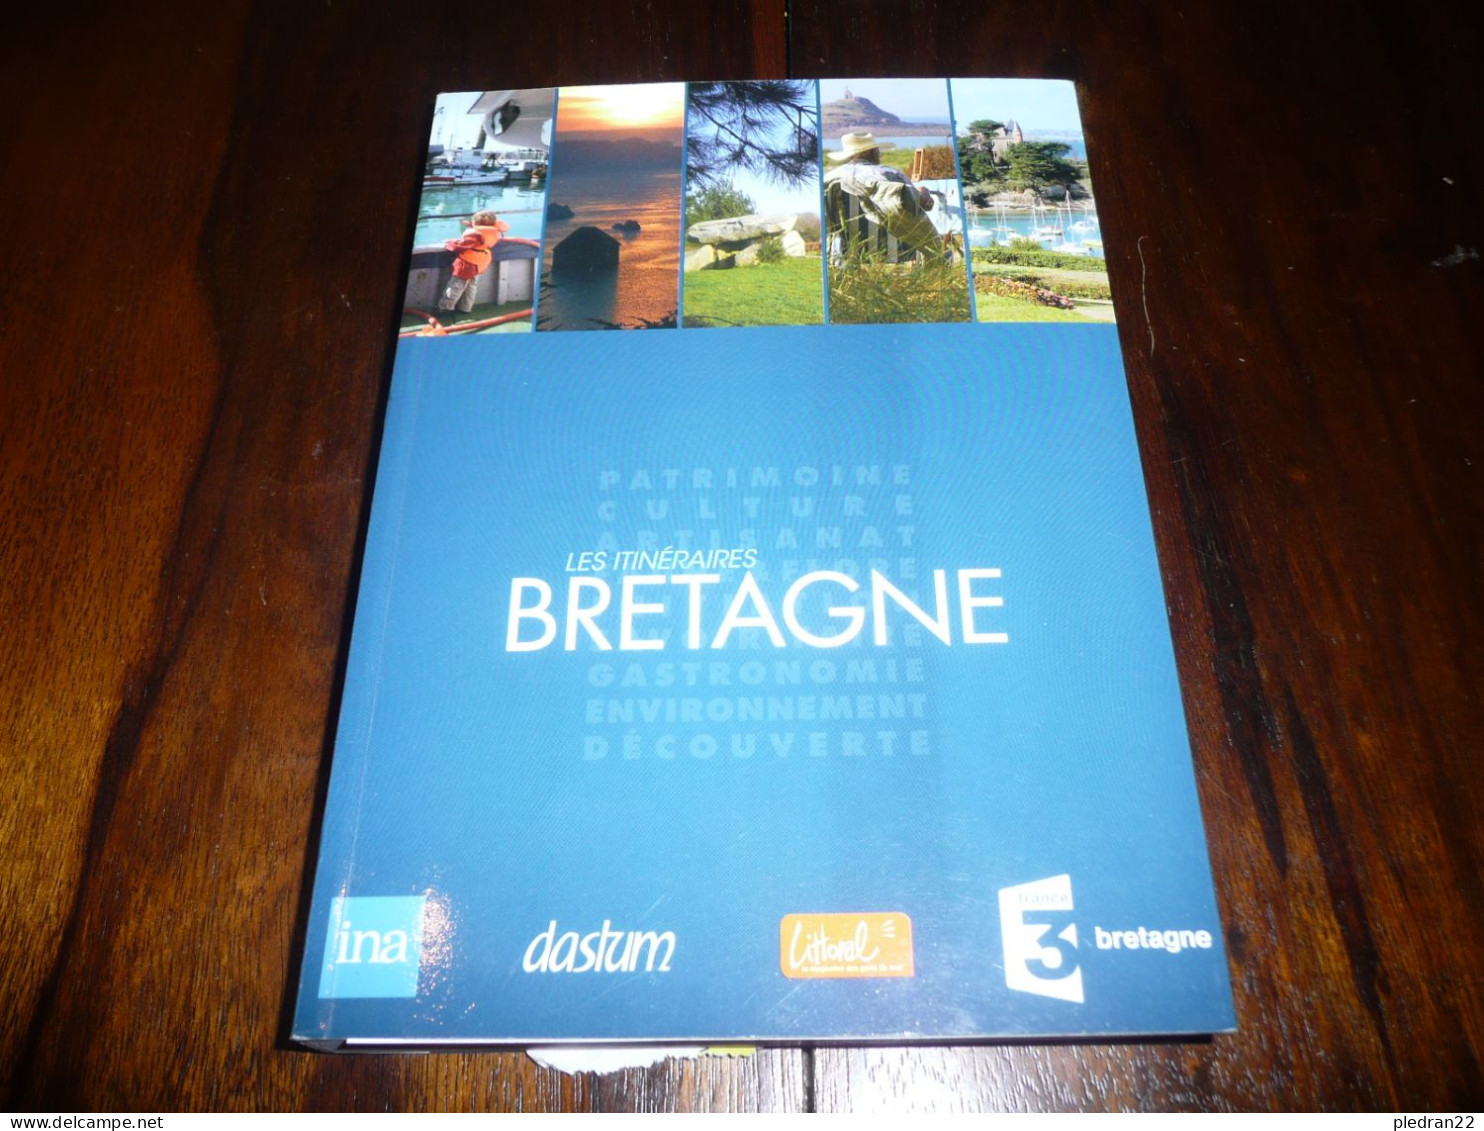 LES ITINERAIRES BRETAGNE PATRIMOINE CULTURE ARTISANAT GASTRONOMIE ENVIRONNEMENT DECOUVERTE 2012 - Bretagne